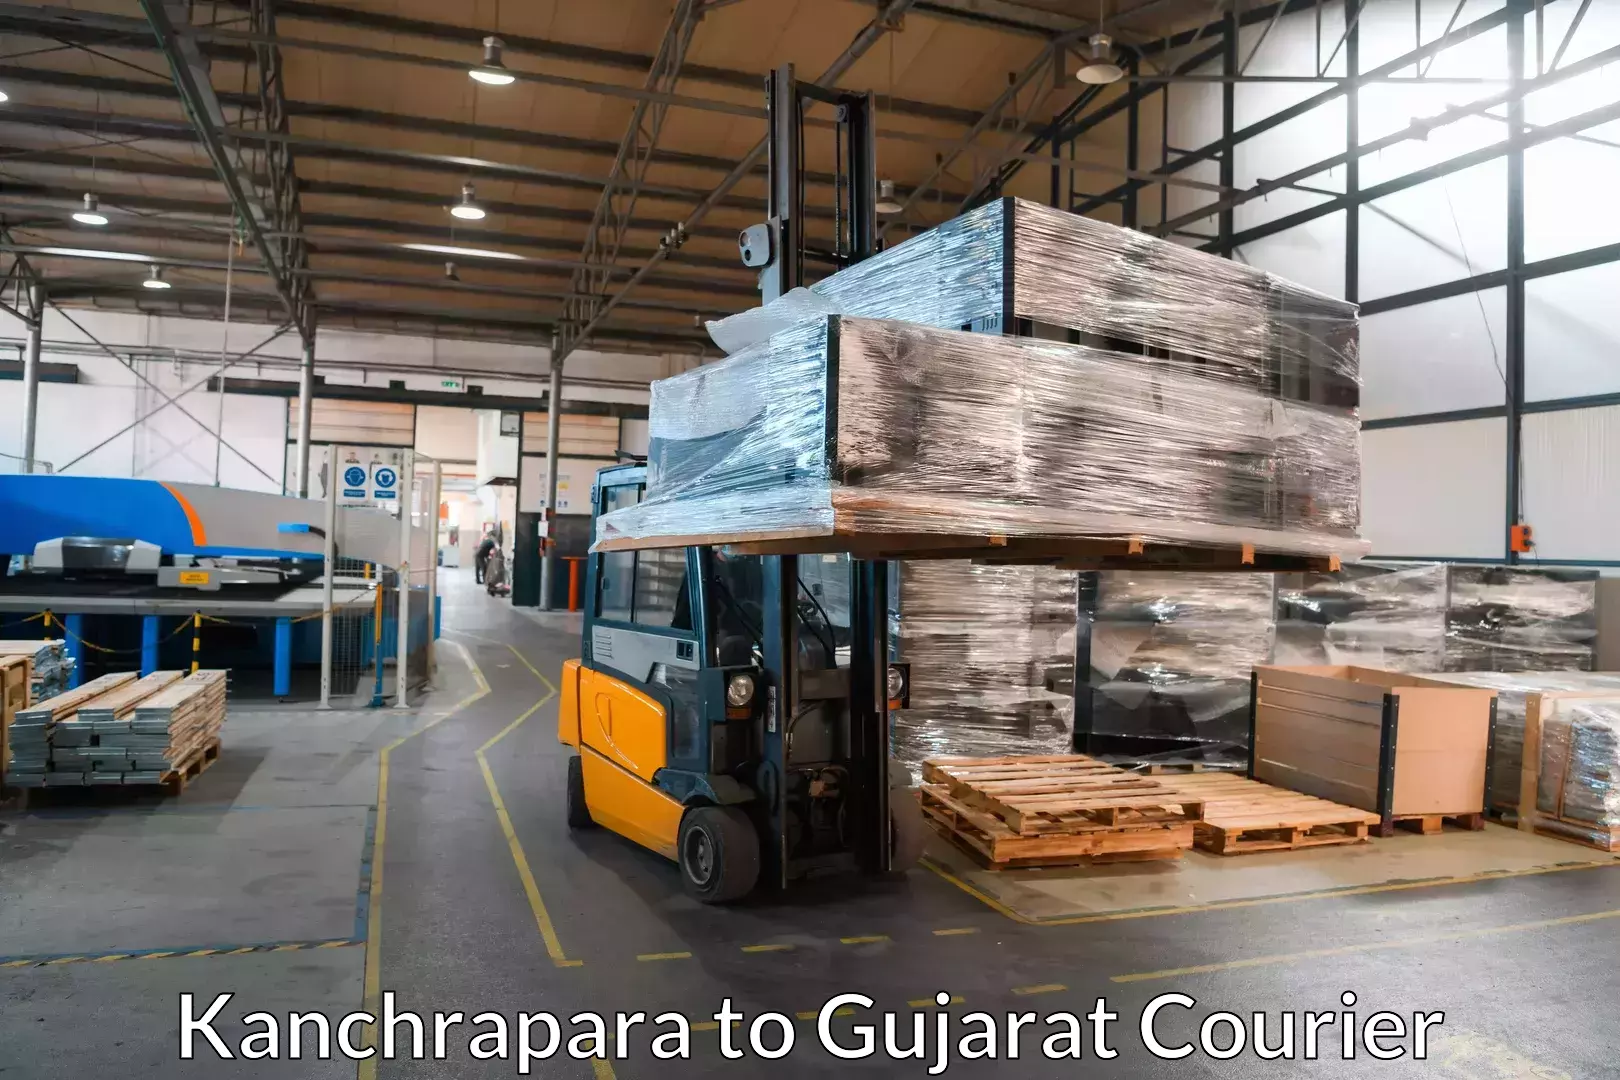 Home moving experts Kanchrapara to Gujarat